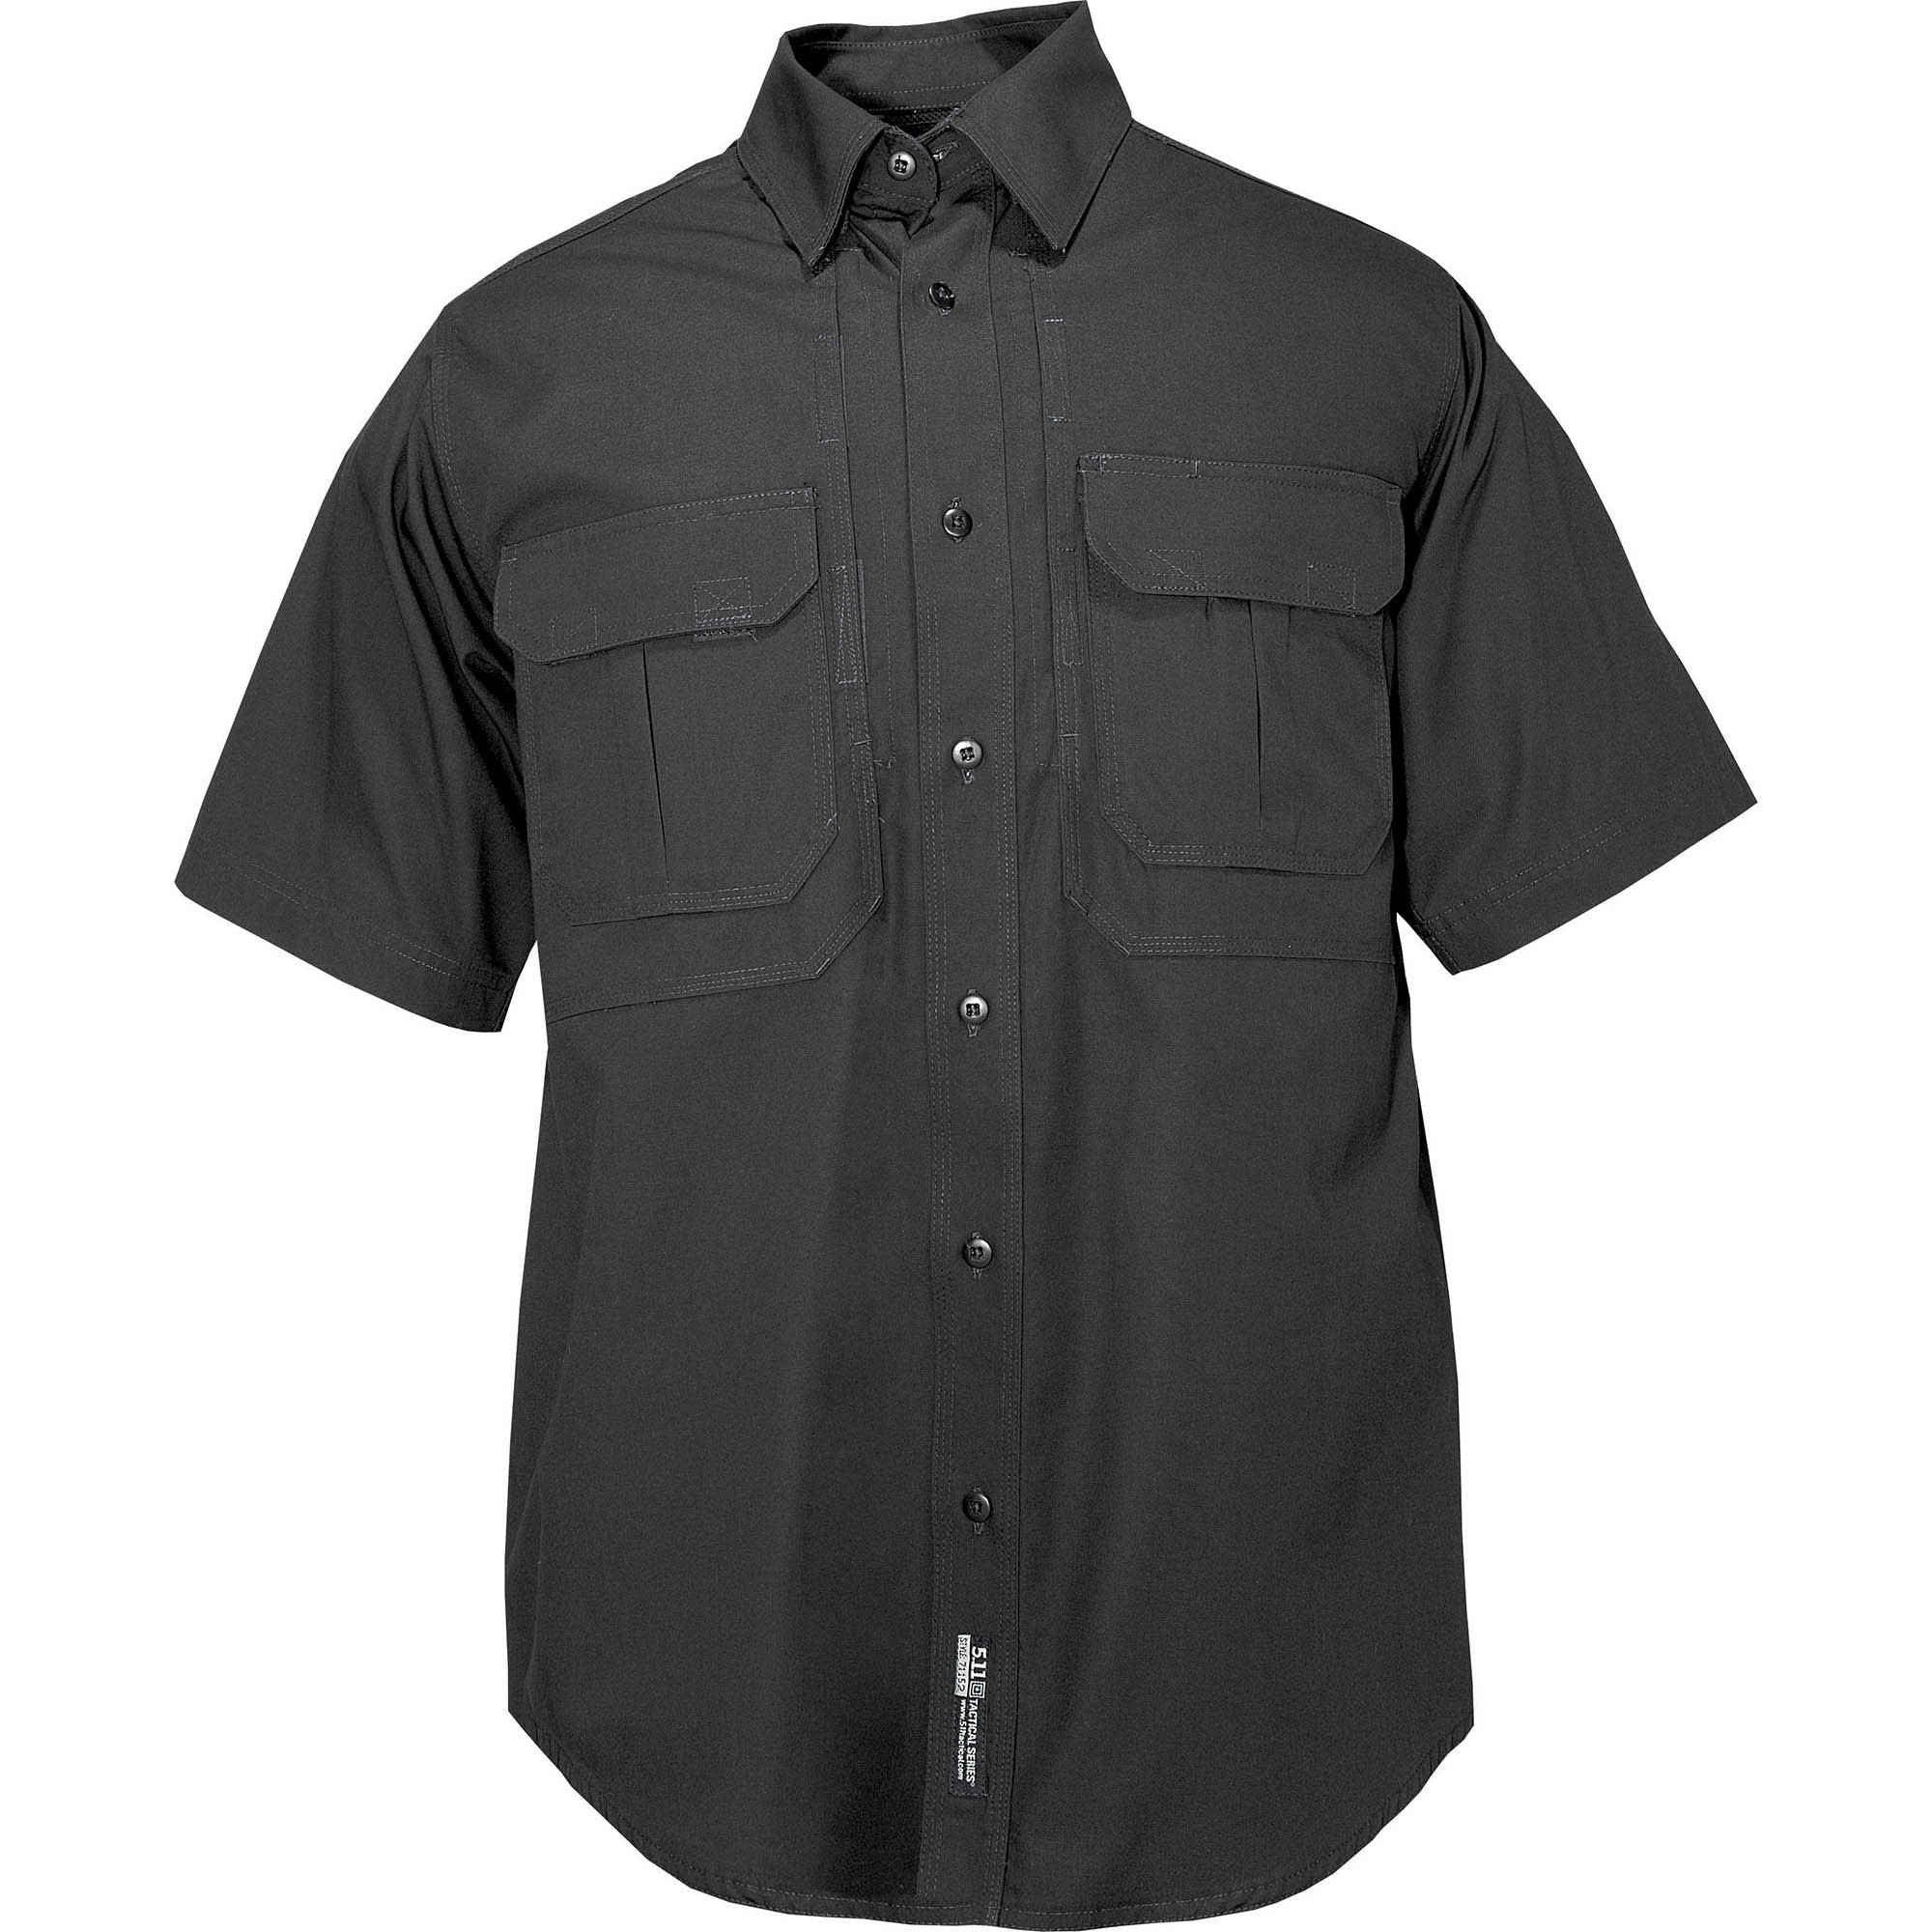 5.11 Tactical Men's Short Sleeve Tactical Shirt Shirts 5.11 Tactical Black Extra Small Tactical Gear Supplier Tactical Distributors Australia